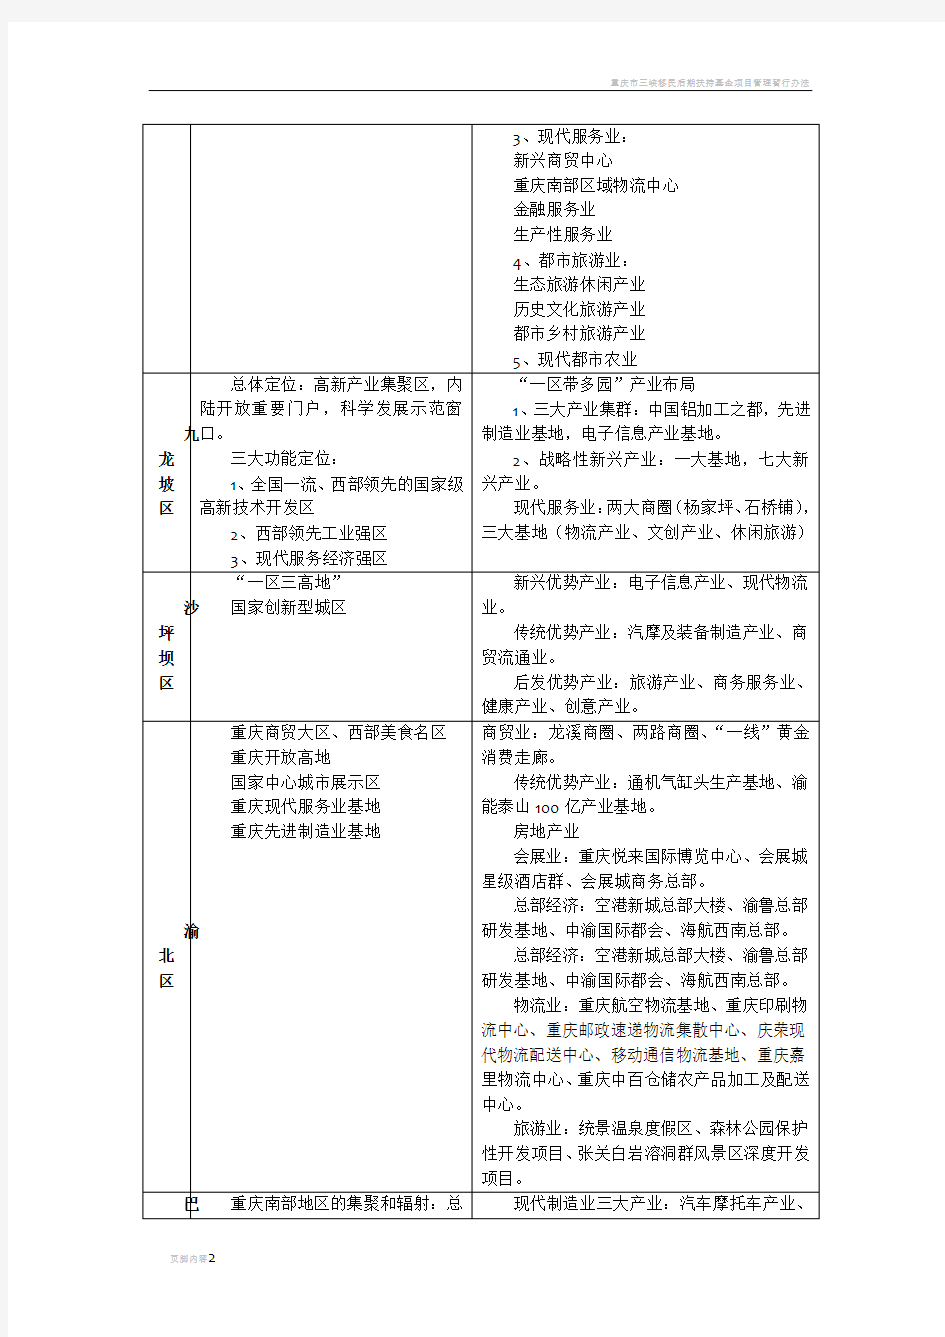 重庆市九大主城区功能定位及产业布局汇总表